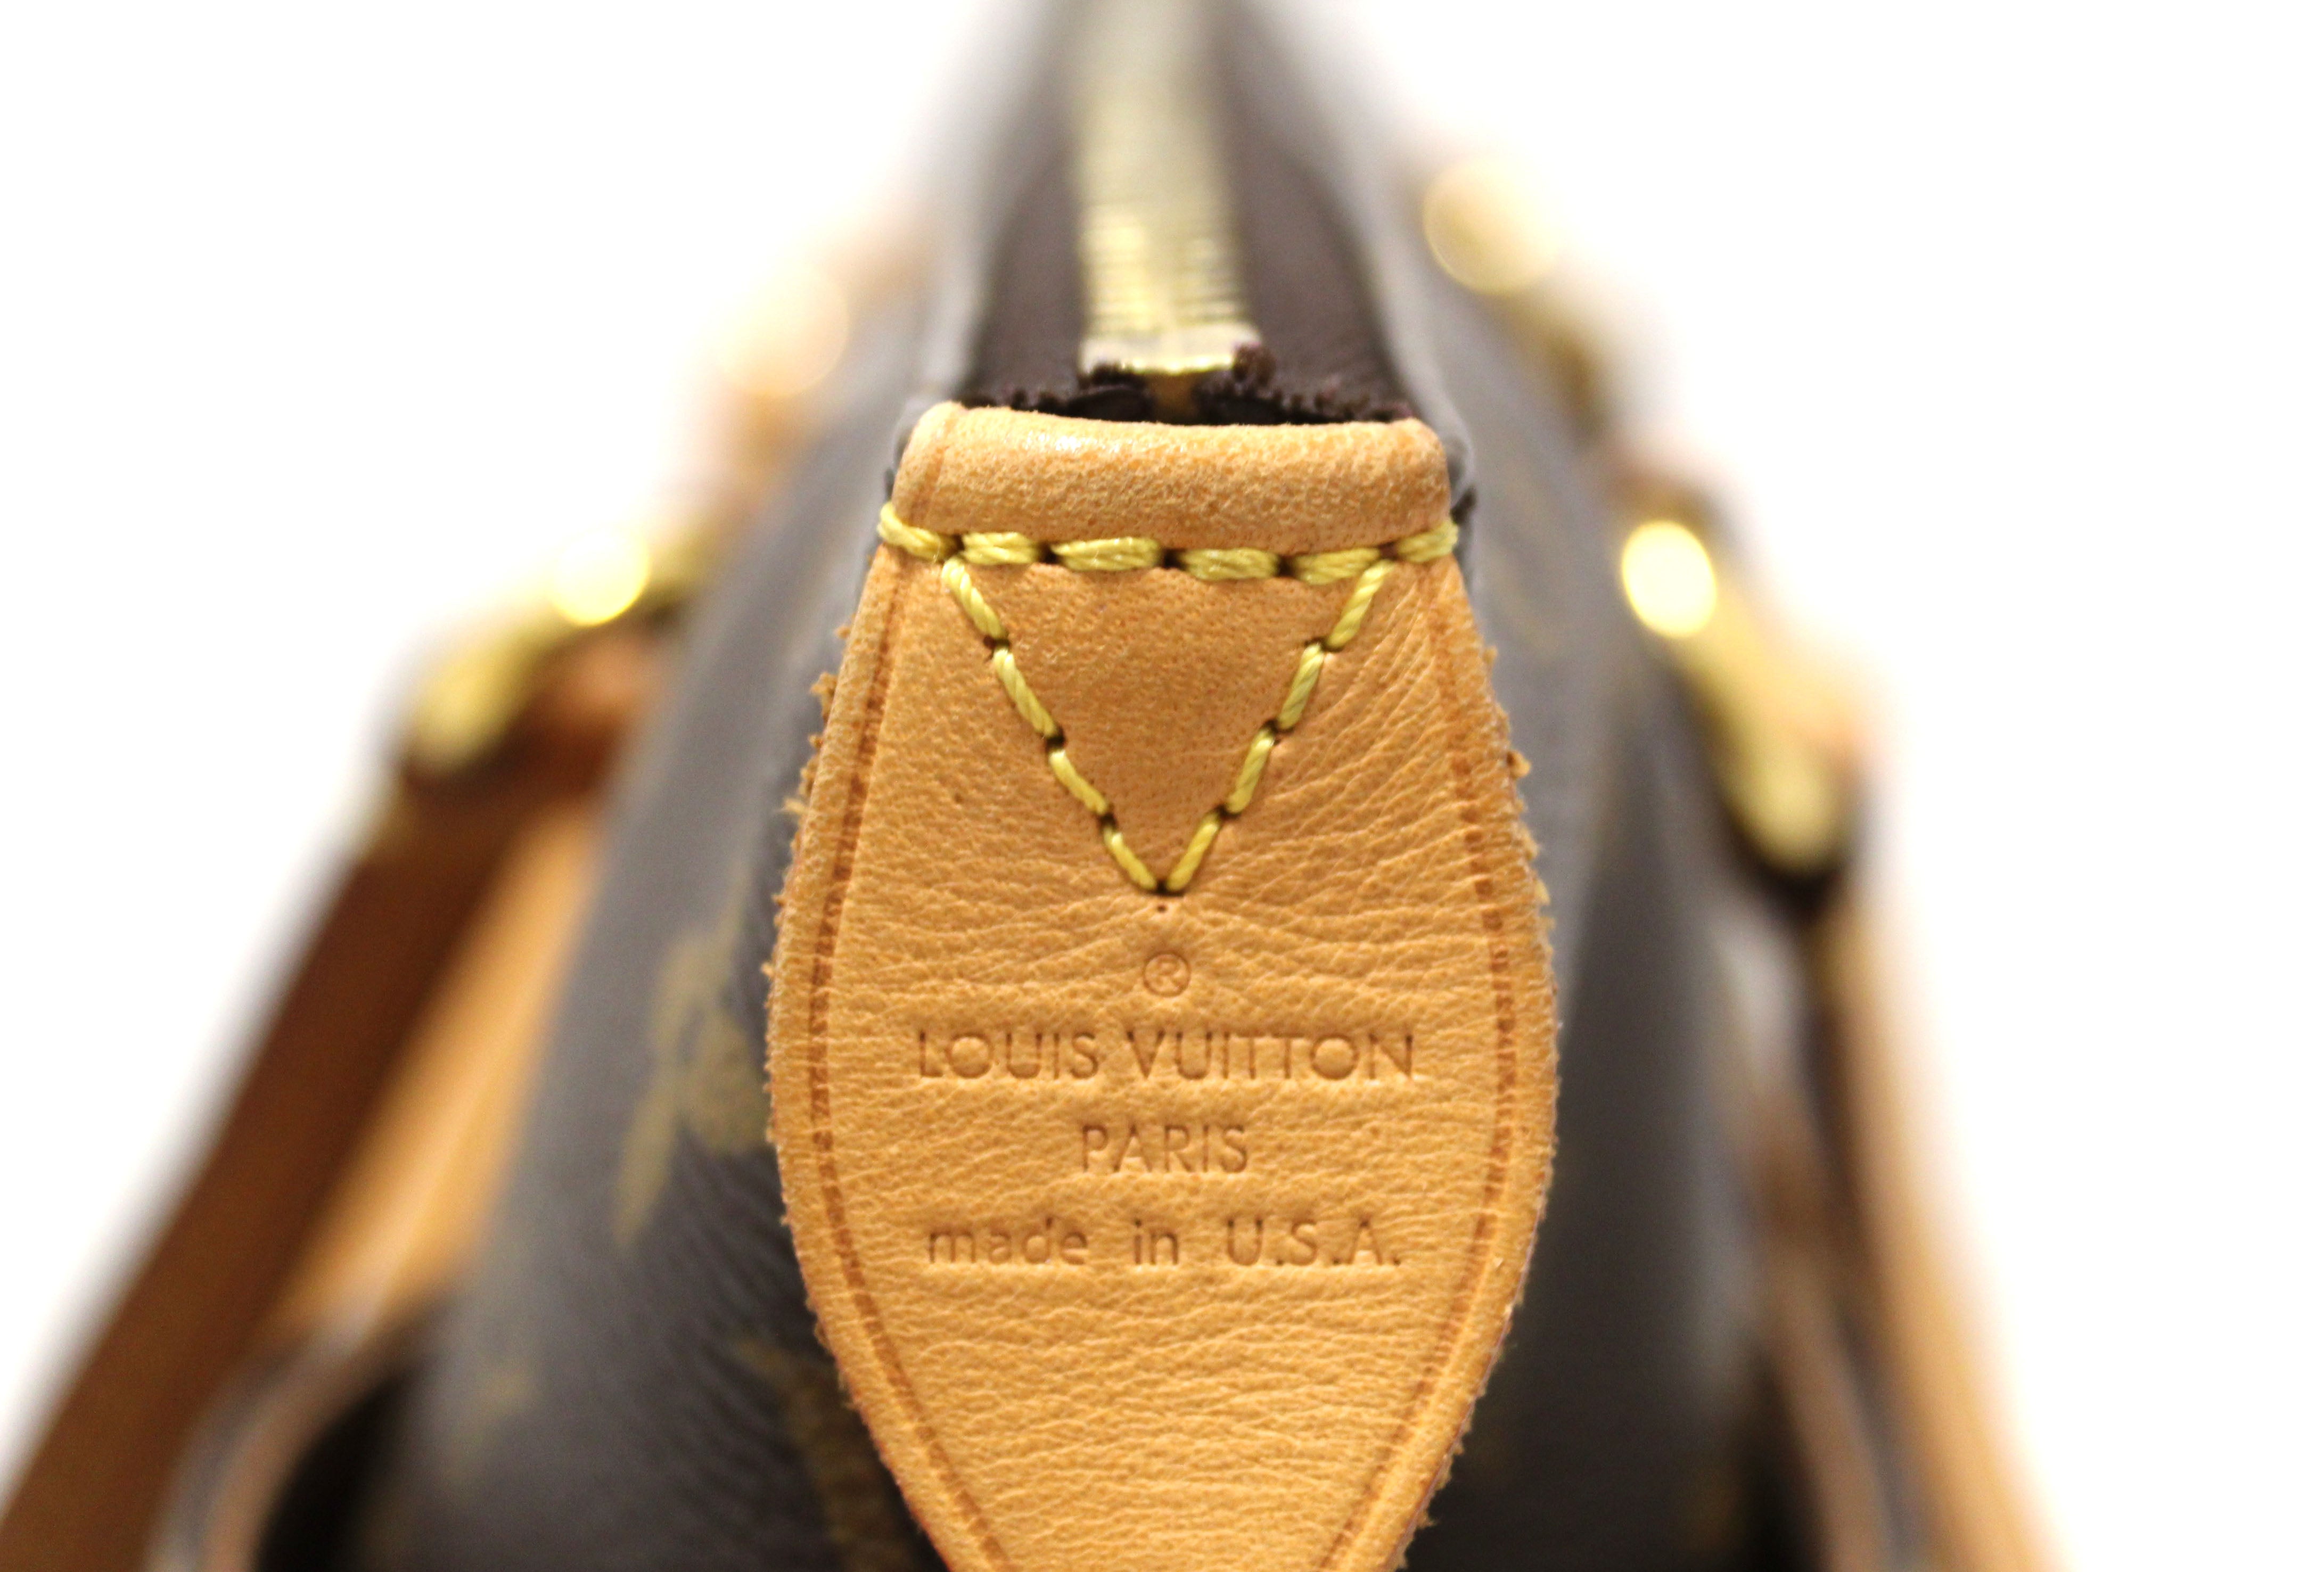 Gorgeous Authentic Louis Vuitton Monogram Totally PM Tote Bag w/Dustbag